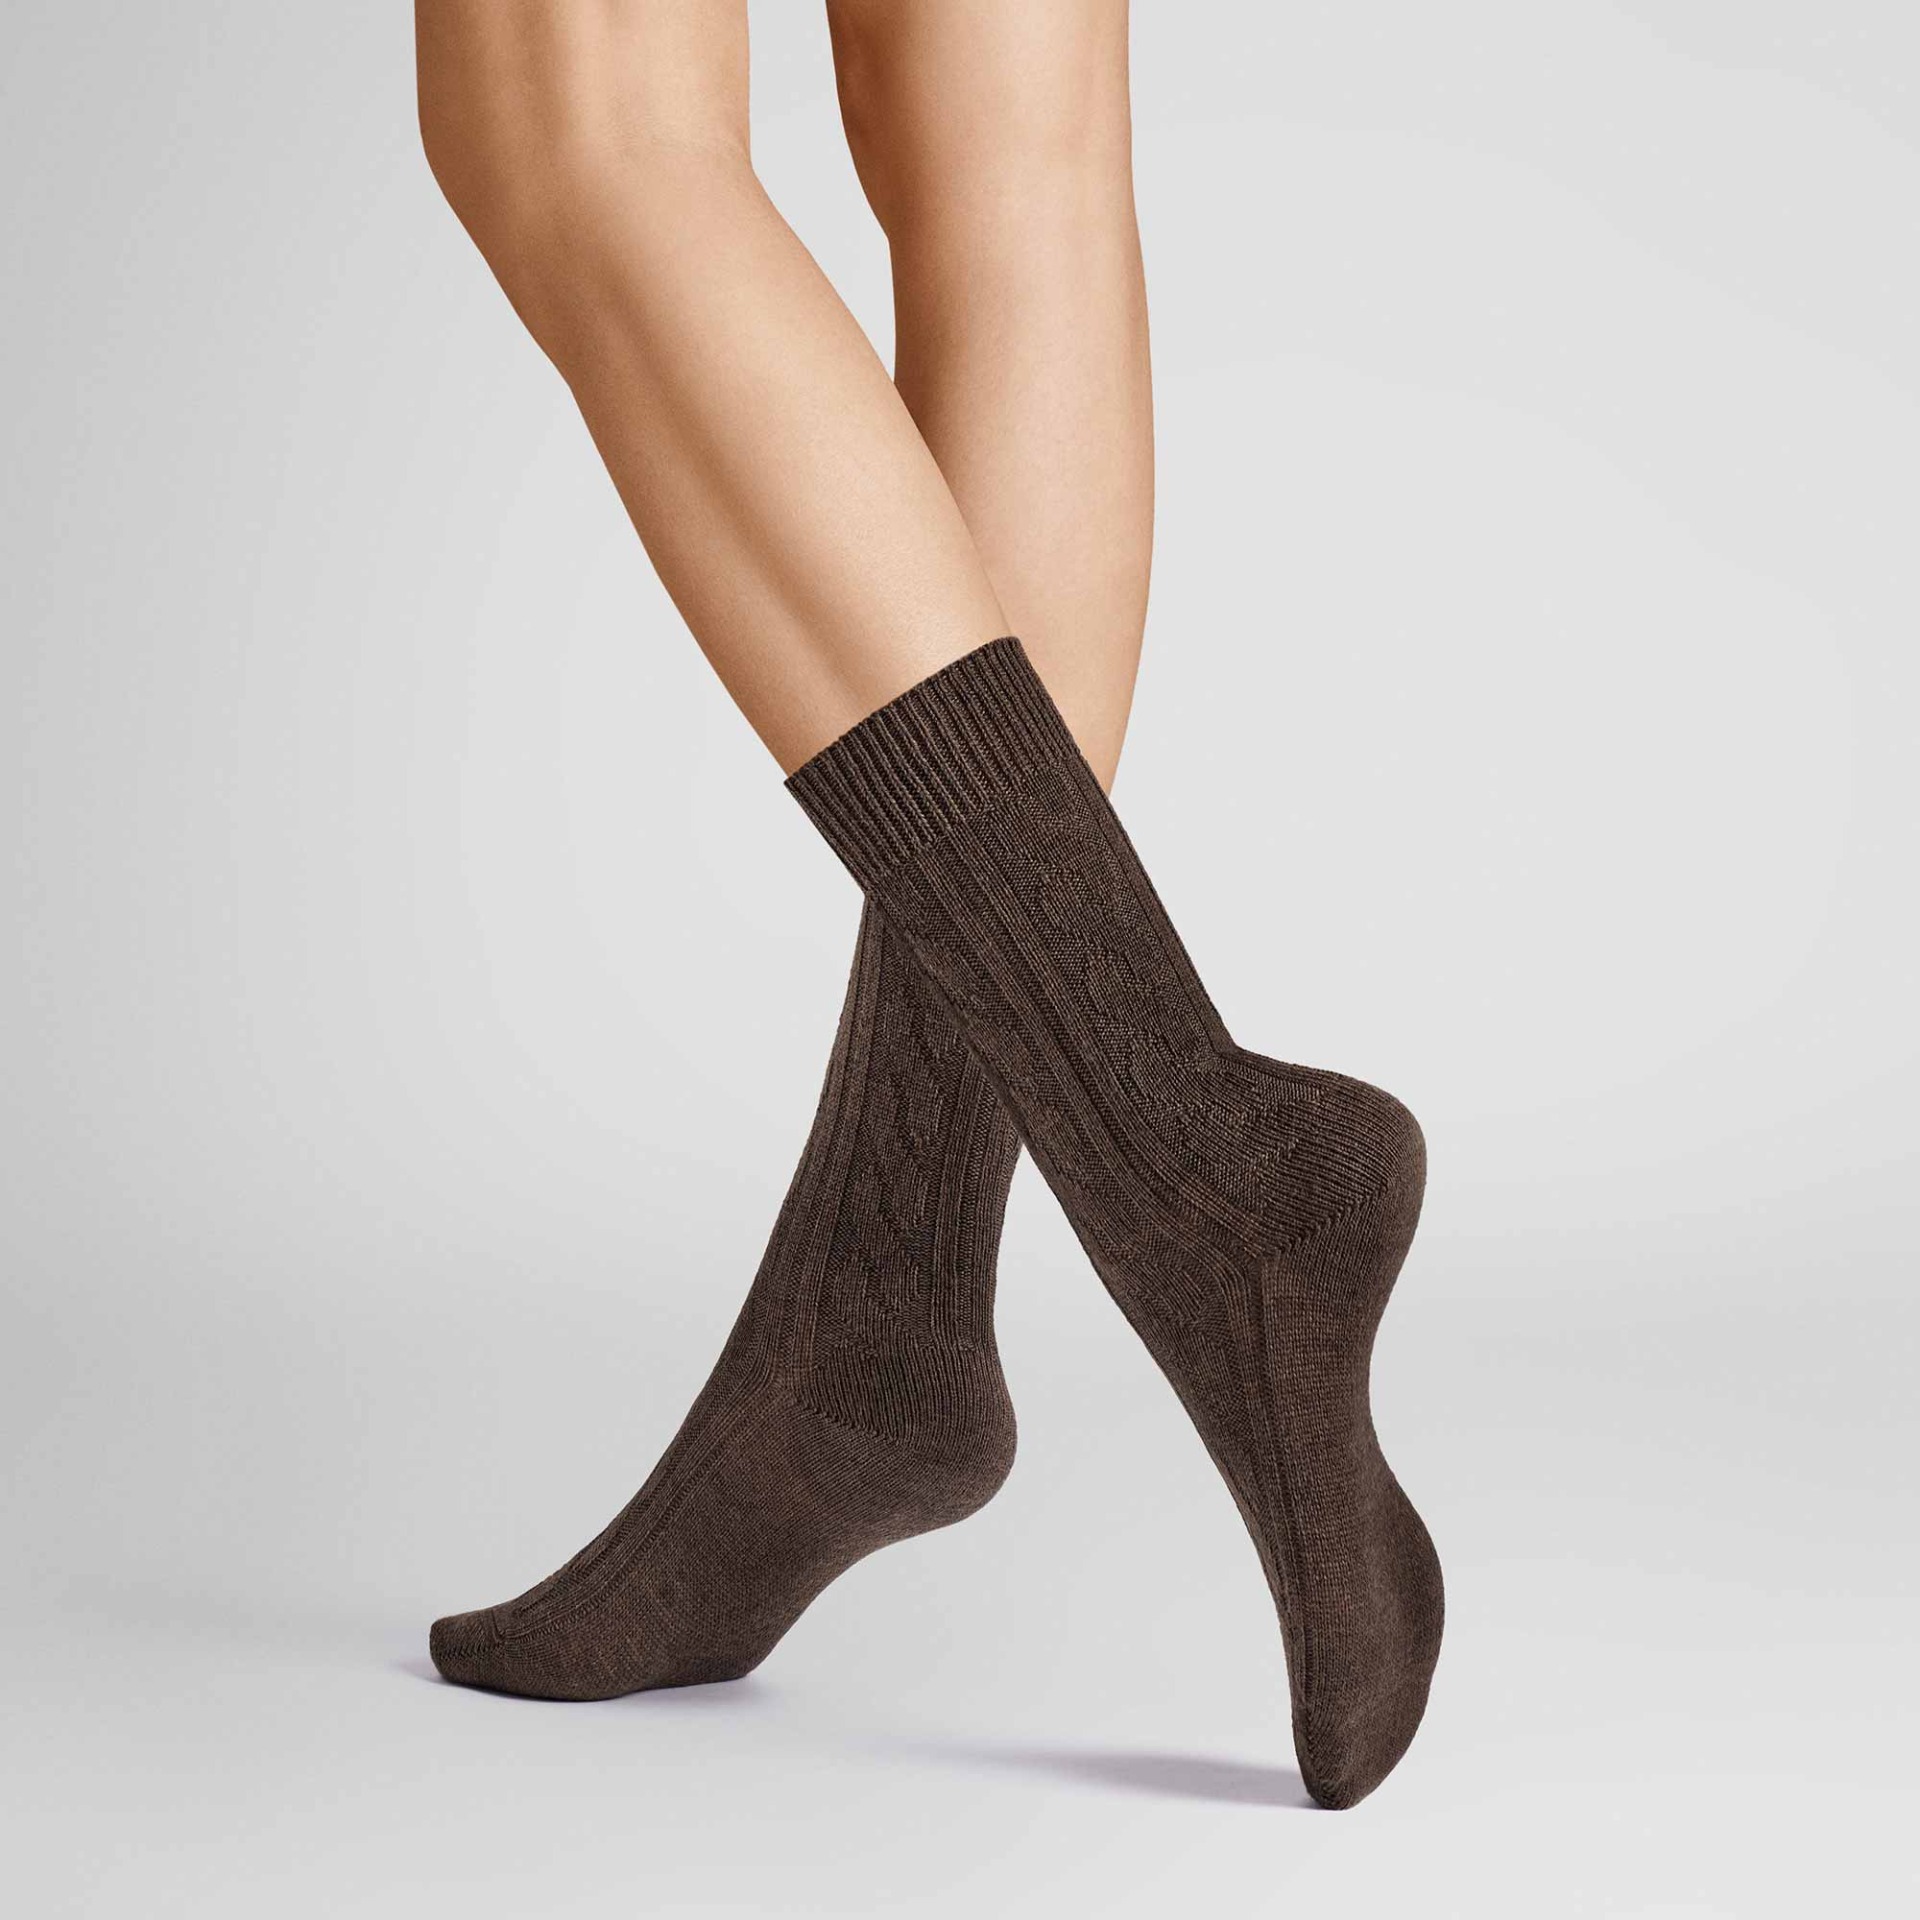 HUDSON Damen WINTER PLAIT -  35/38 - Wärmende Socken mit Zopf-Muster - Brown mel. 0763 (Braun)